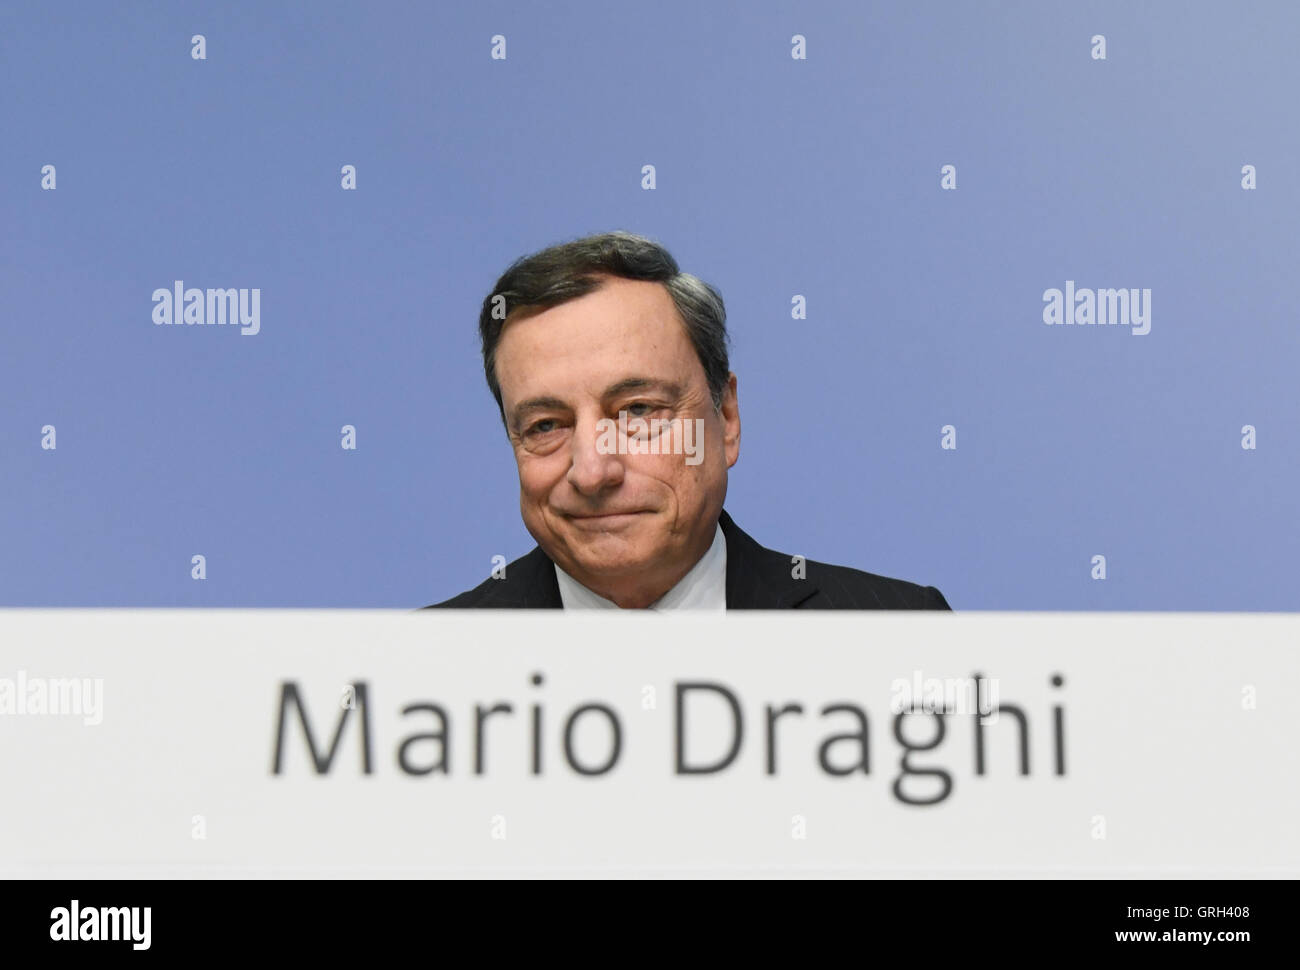 Mario Draghi, Président de la Banque centrale européenne (BCE), se situe au début de la conférence de presse de la BCE à Francfort am Main, Allemagne, 08 septembre 2016. Photo : ARNE DEDERT/dpa Banque D'Images